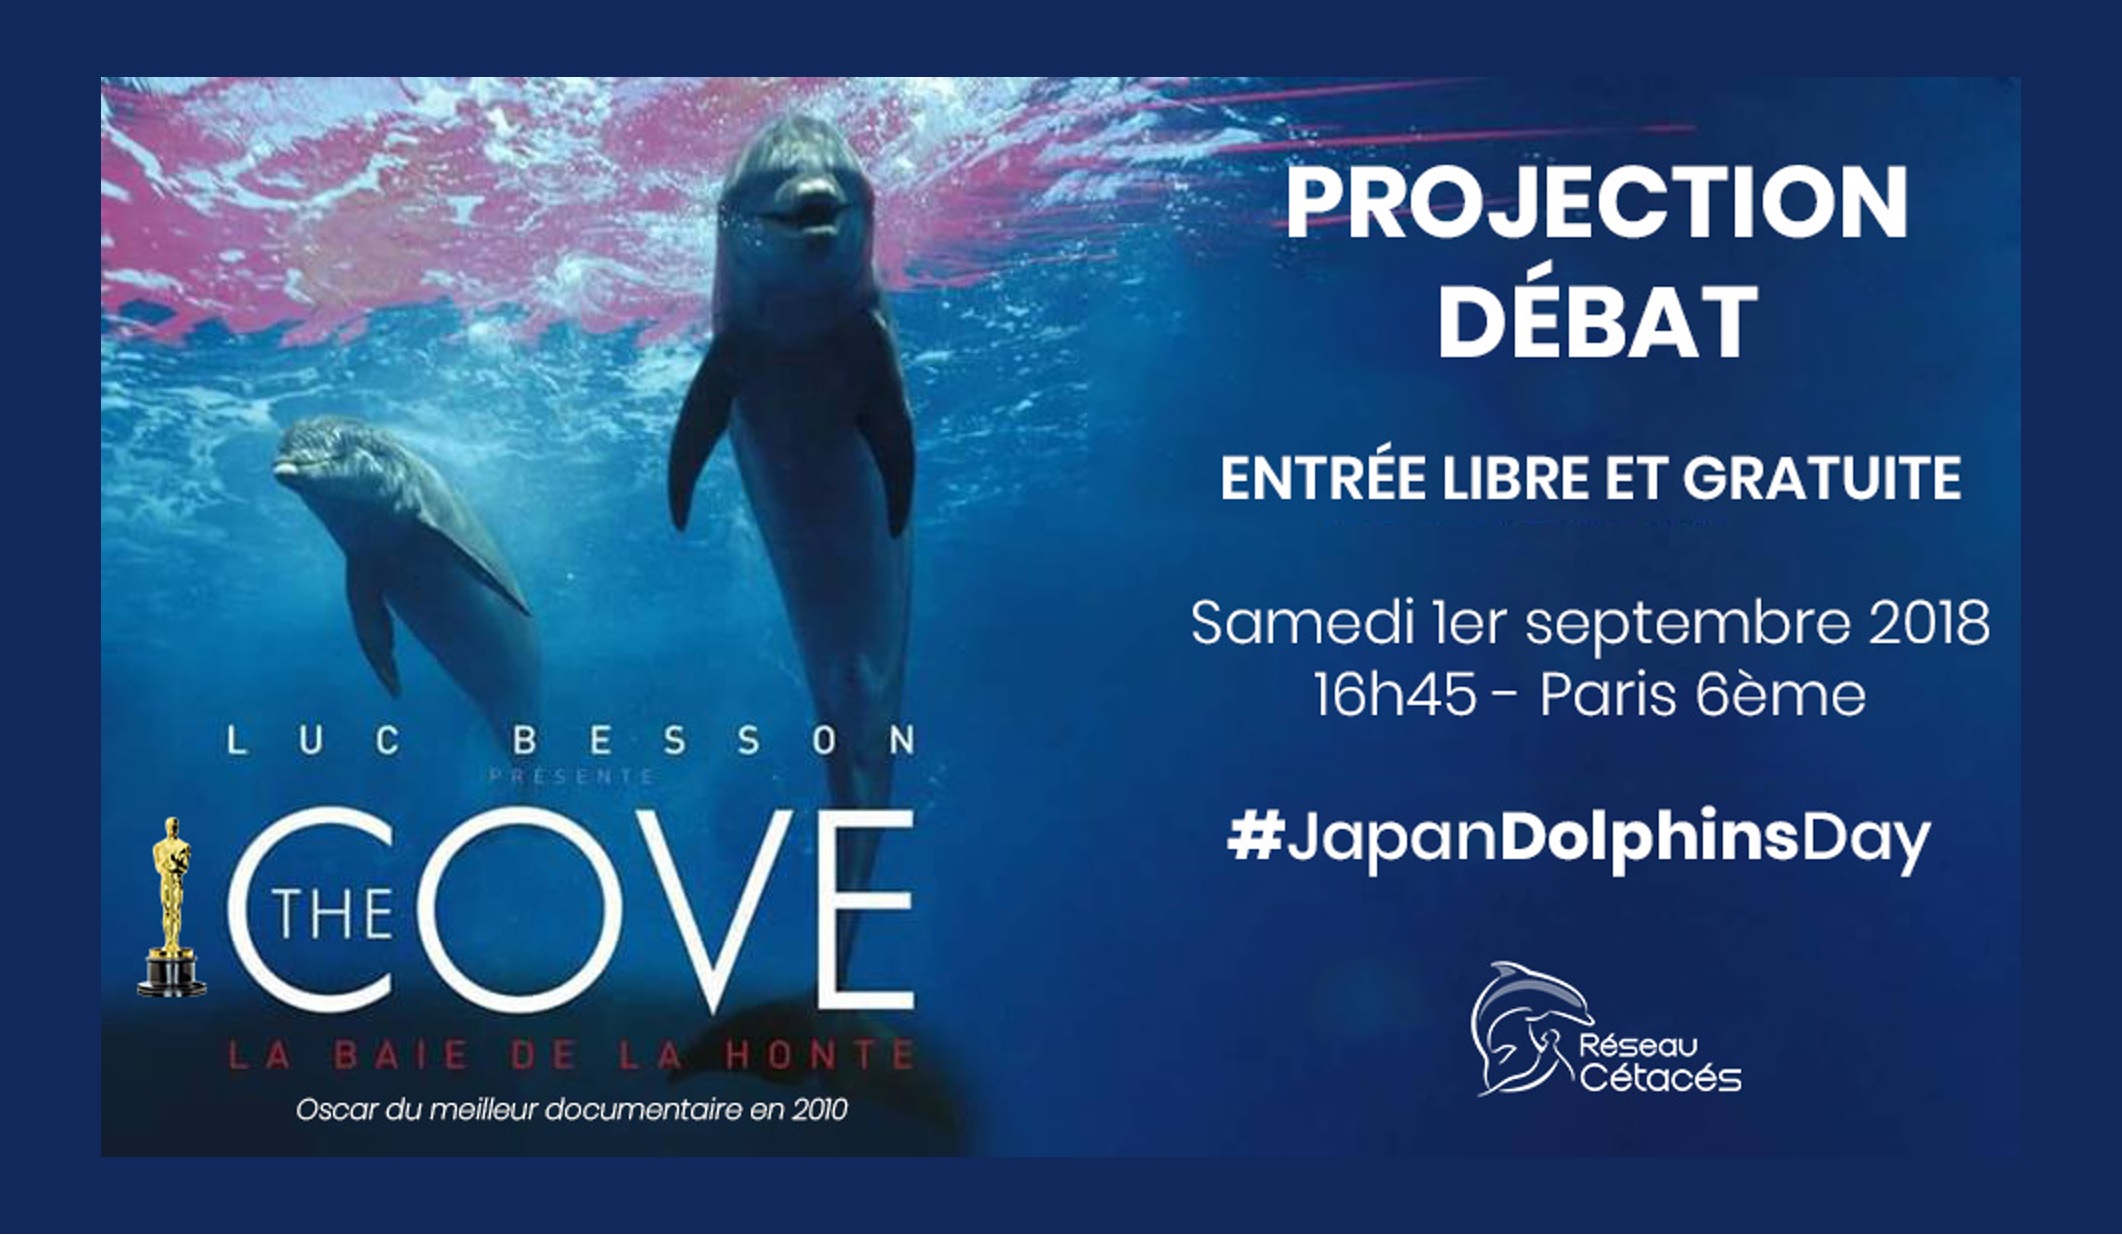 Invitation projection « The Cove, la baie de la Honte », Paris 1er septembre 2018 – Communiqué de Presse